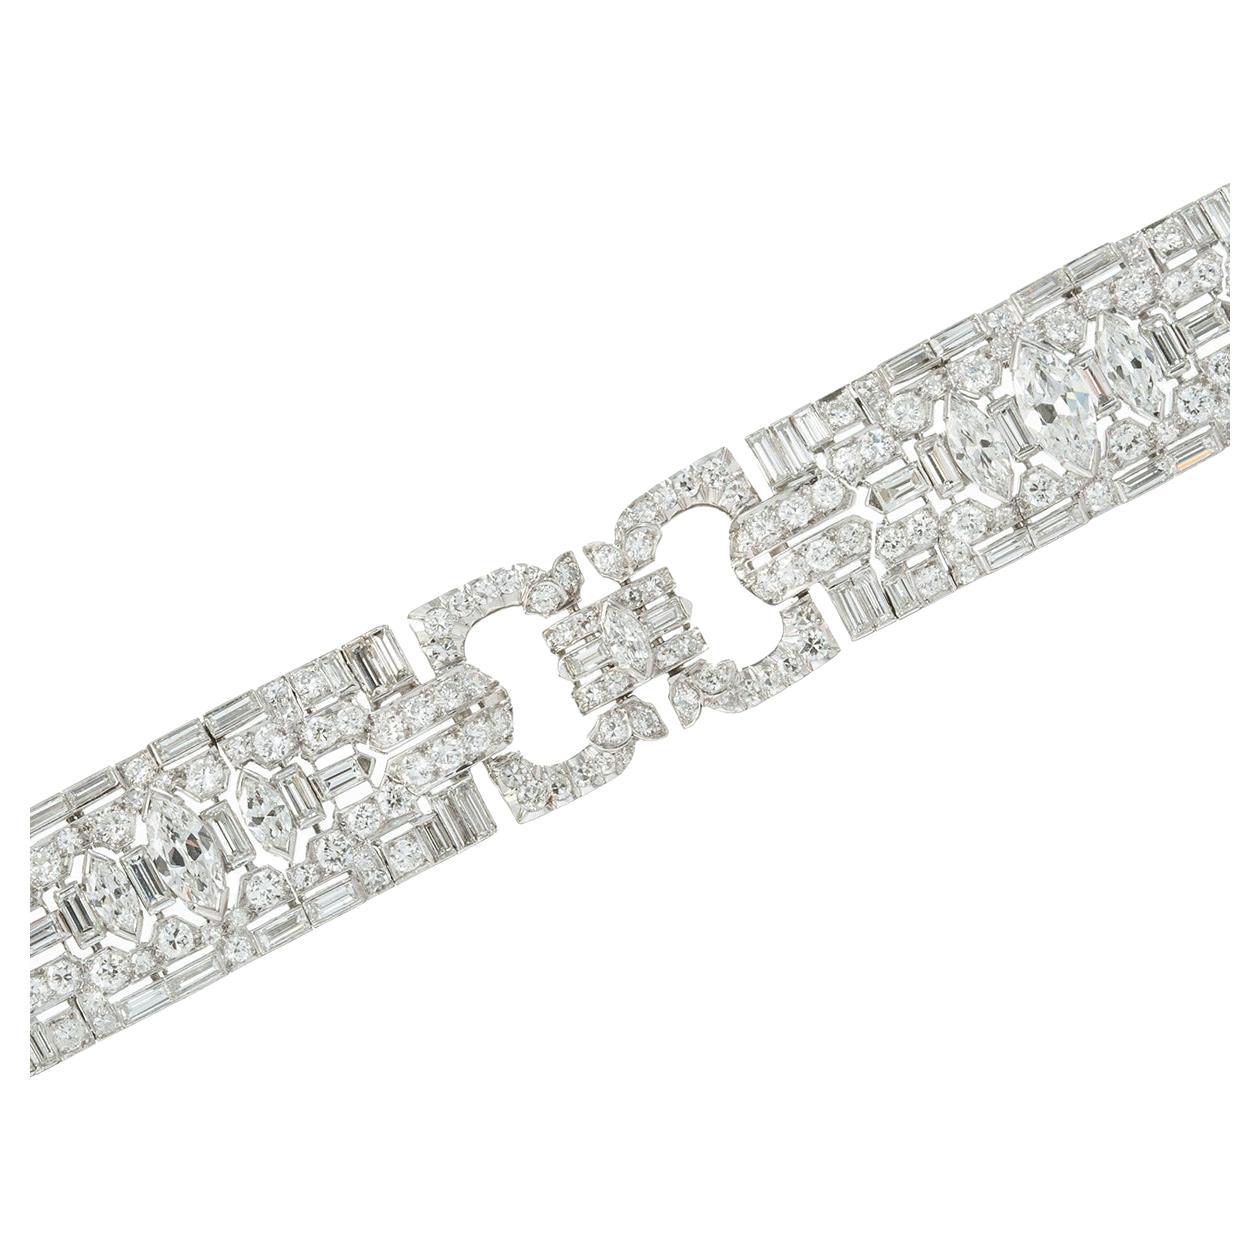 Très beau bracelet à maillons en diamant Art déco, serti de diamants de forme marquise, de taille baguette et de taille circulaire.  Fait à la main en platine.  Diamants pesant environ 7,50 carats au total (les trois plus gros diamants centraux de